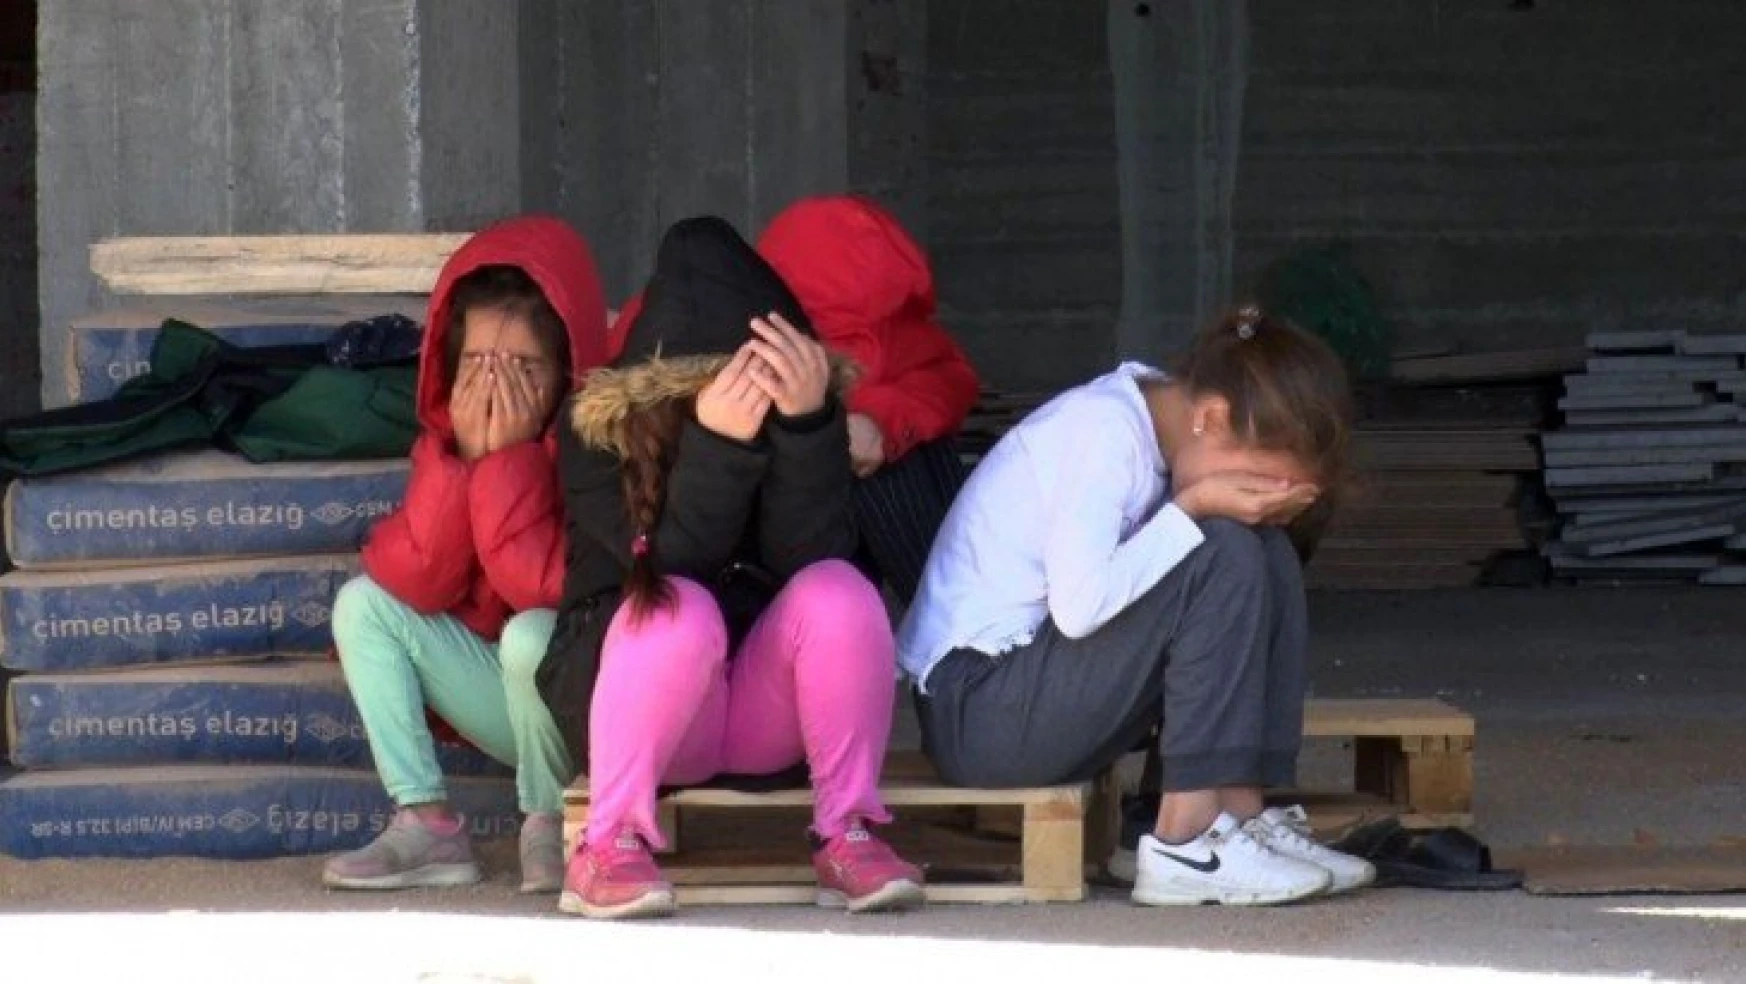 Elazığ'da intihara teşebbüs eden kadını çocukları gözyaşları içerisinde izledi